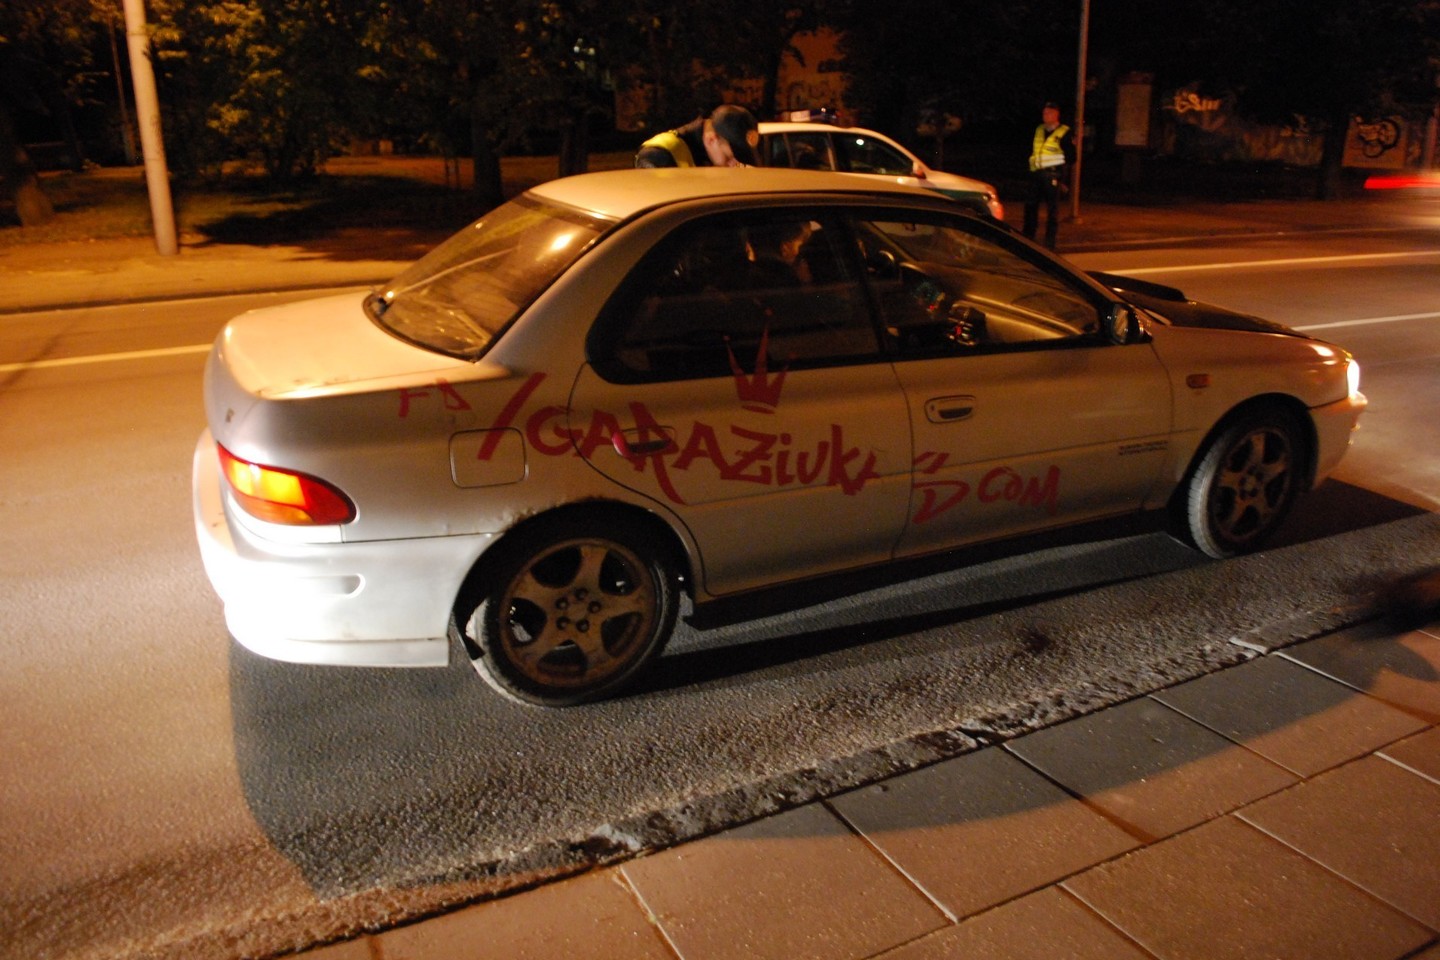 Penktadienio naktį sostinės gatvėse vyko tradicinis kelių policijos reidas.<br>S. Rinkevičiaus nuotr.